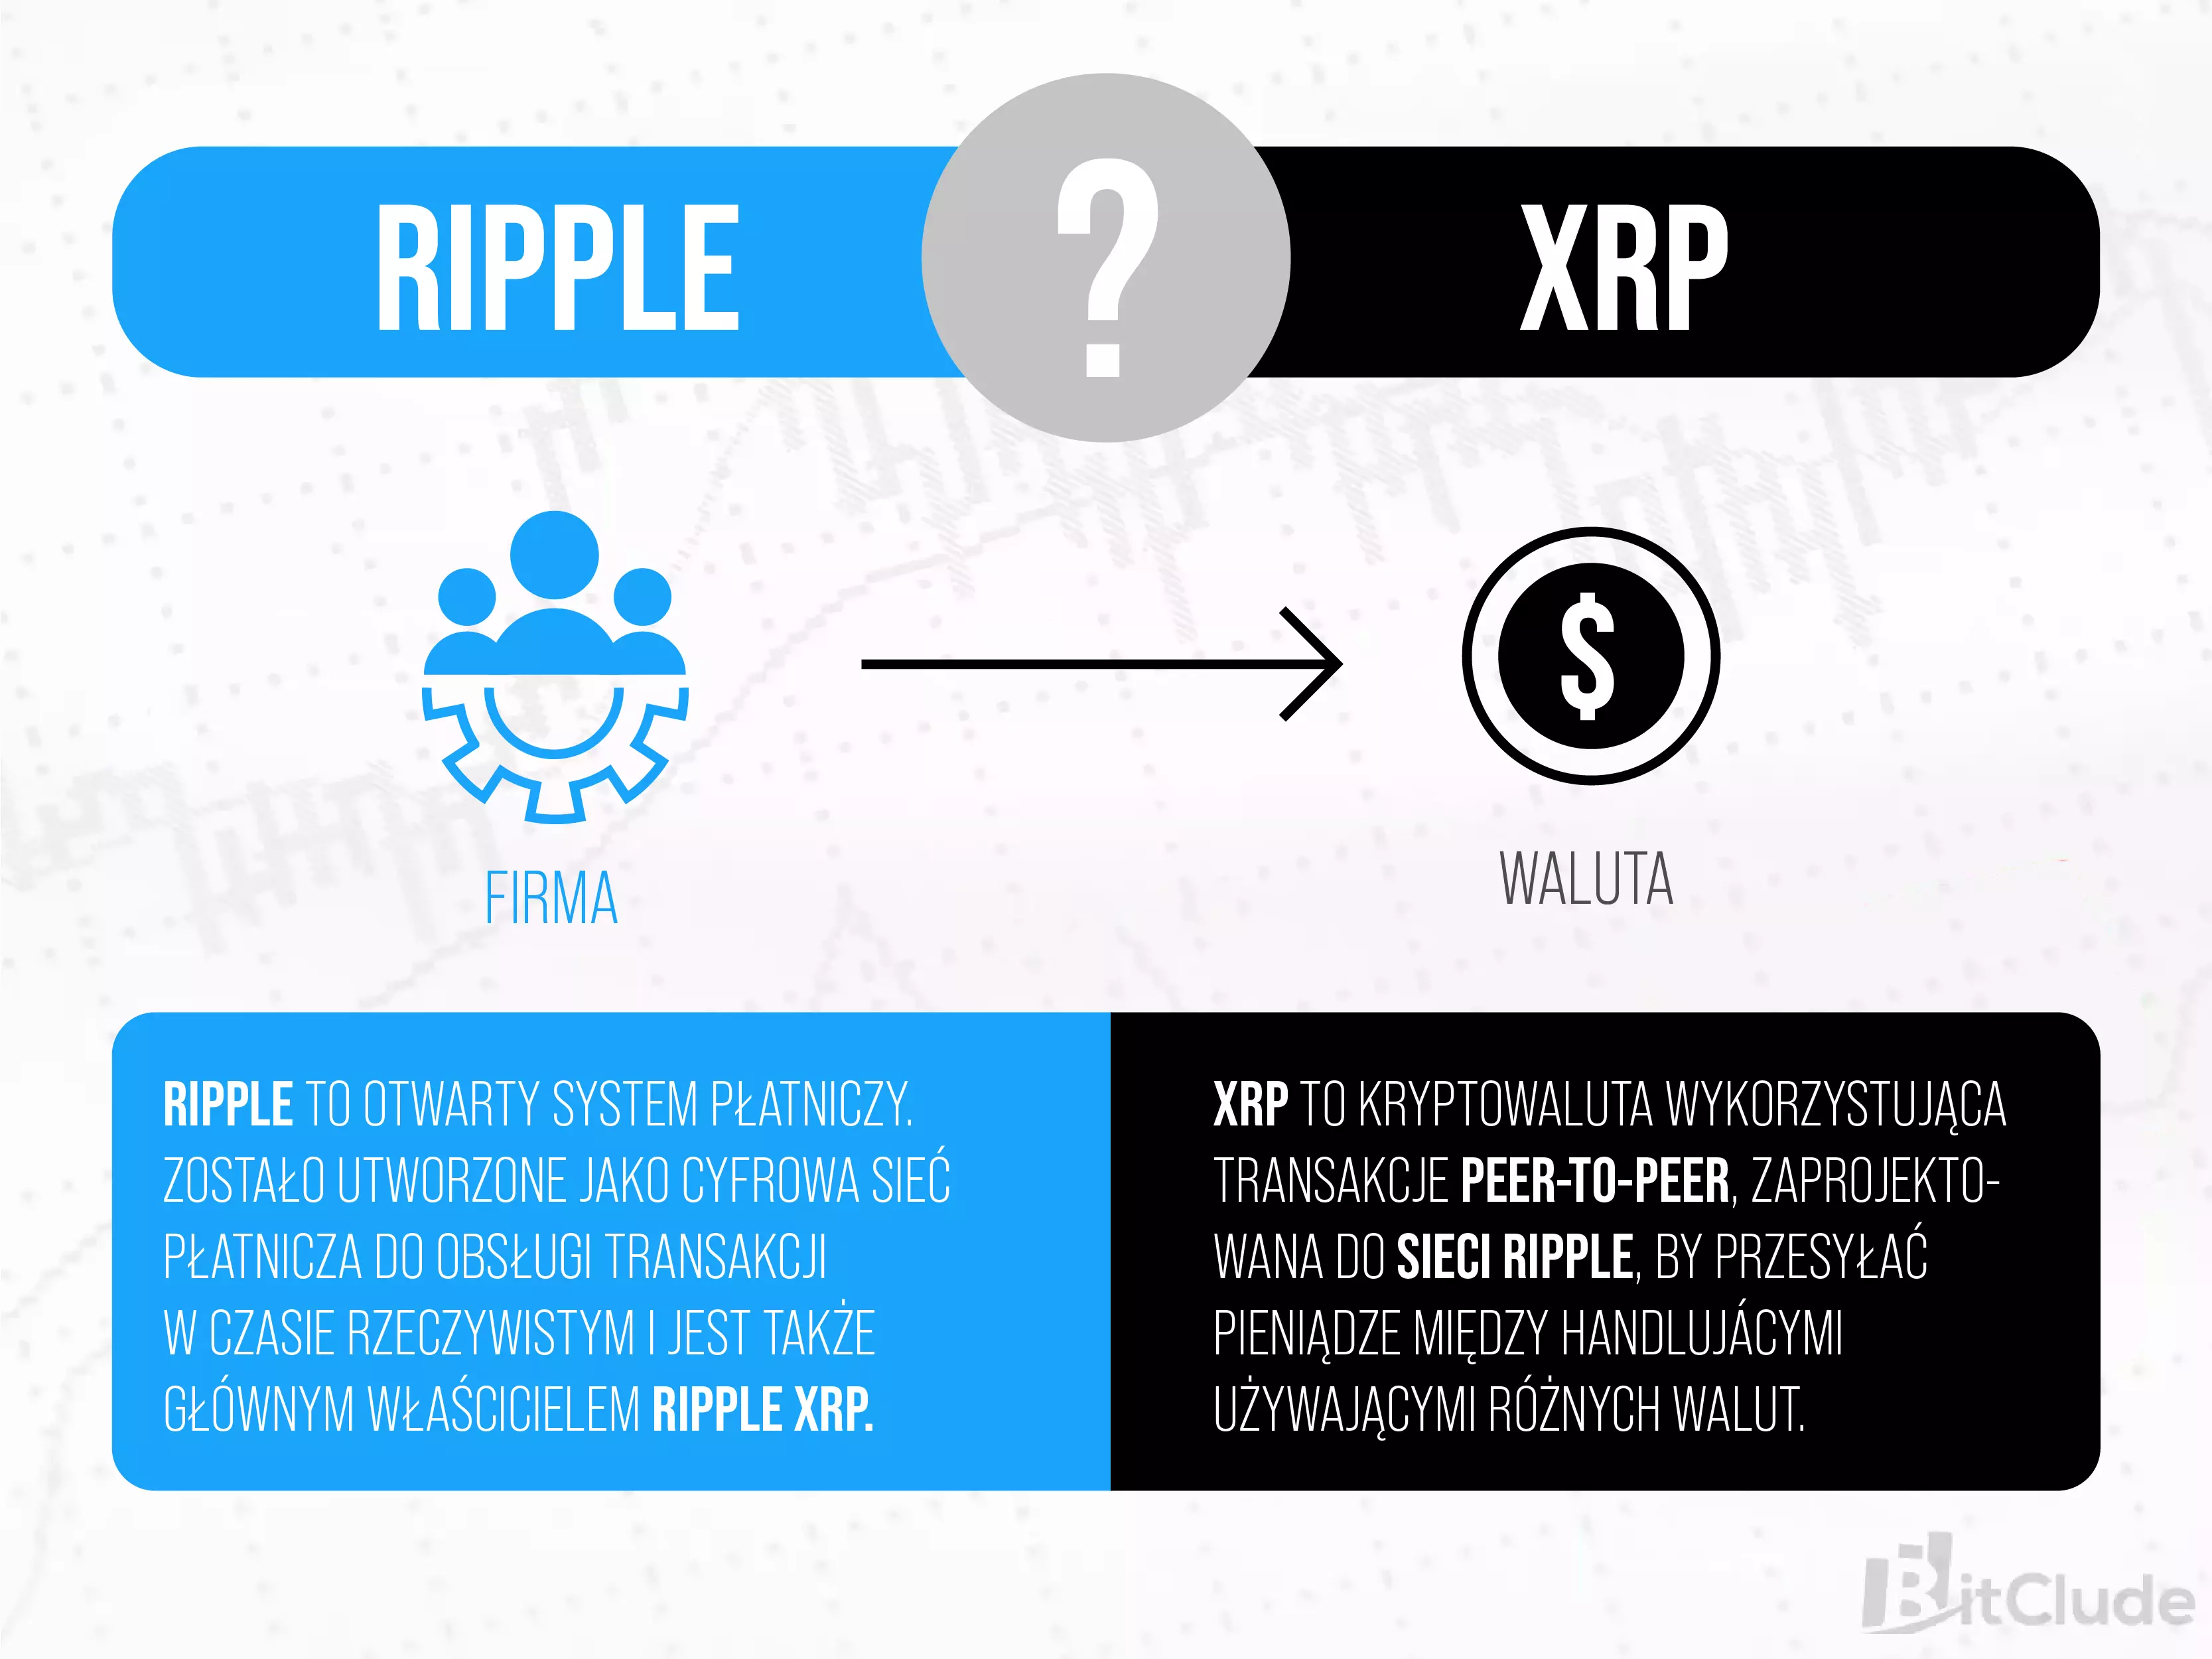 Ripple to nie kryptowaluta - Ripple jest firmą, a XRP kryptowalutą